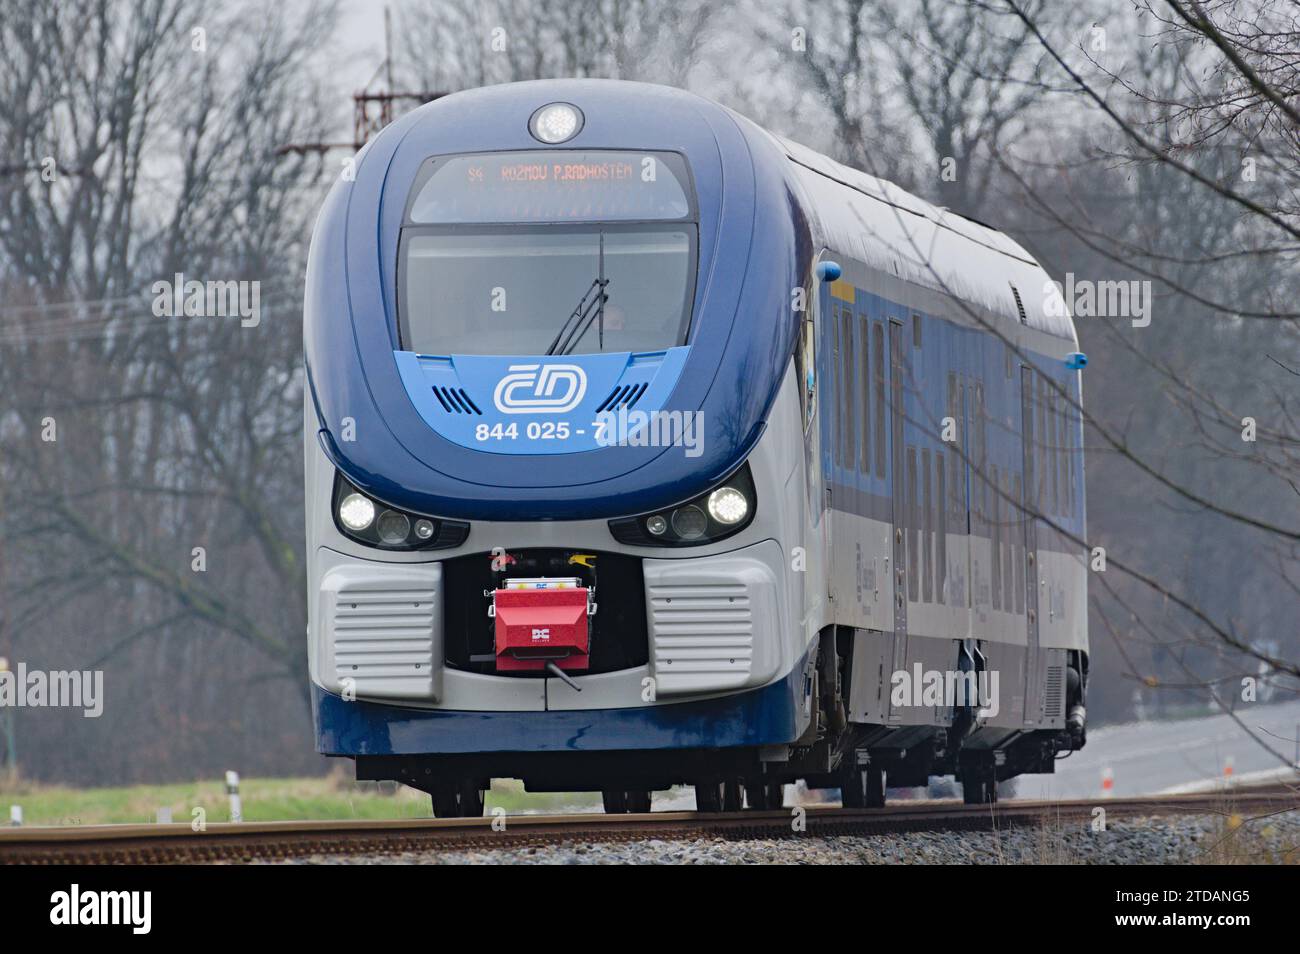 Regionale Lokalbahn des Staatsunternehmens Ceske drahy - Tschechische Eisenbahnen. Großer Eisenbahnbetreiber in der Tschechischen Republik. Stockfoto